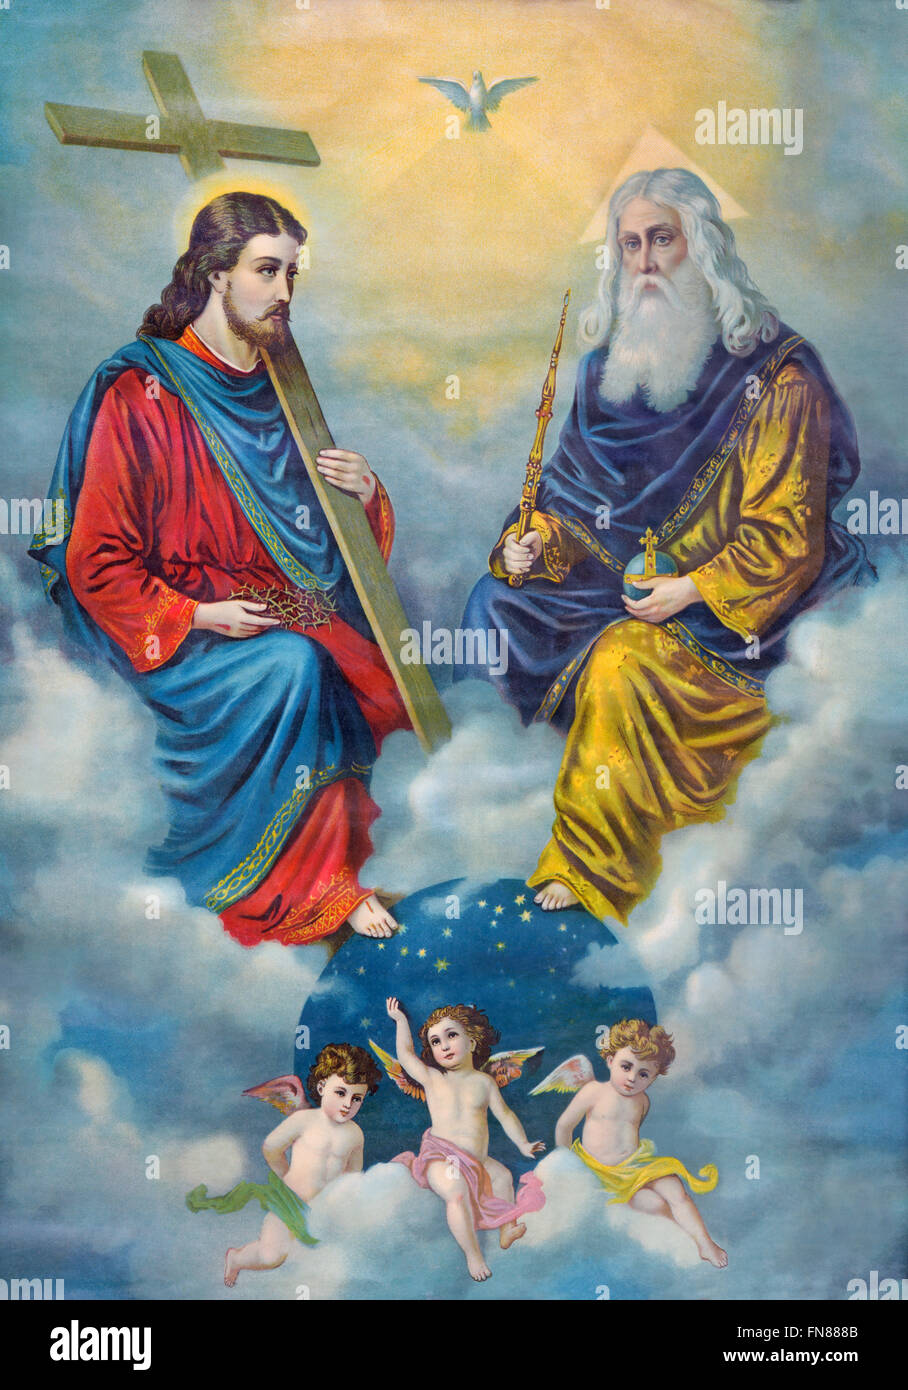 SEBECHLEBY, Slowakei - 27. Februar 2016: Typisches katholische Bild der Heiligen Dreifaltigkeit in Deutschland gedruckt. Stockfoto